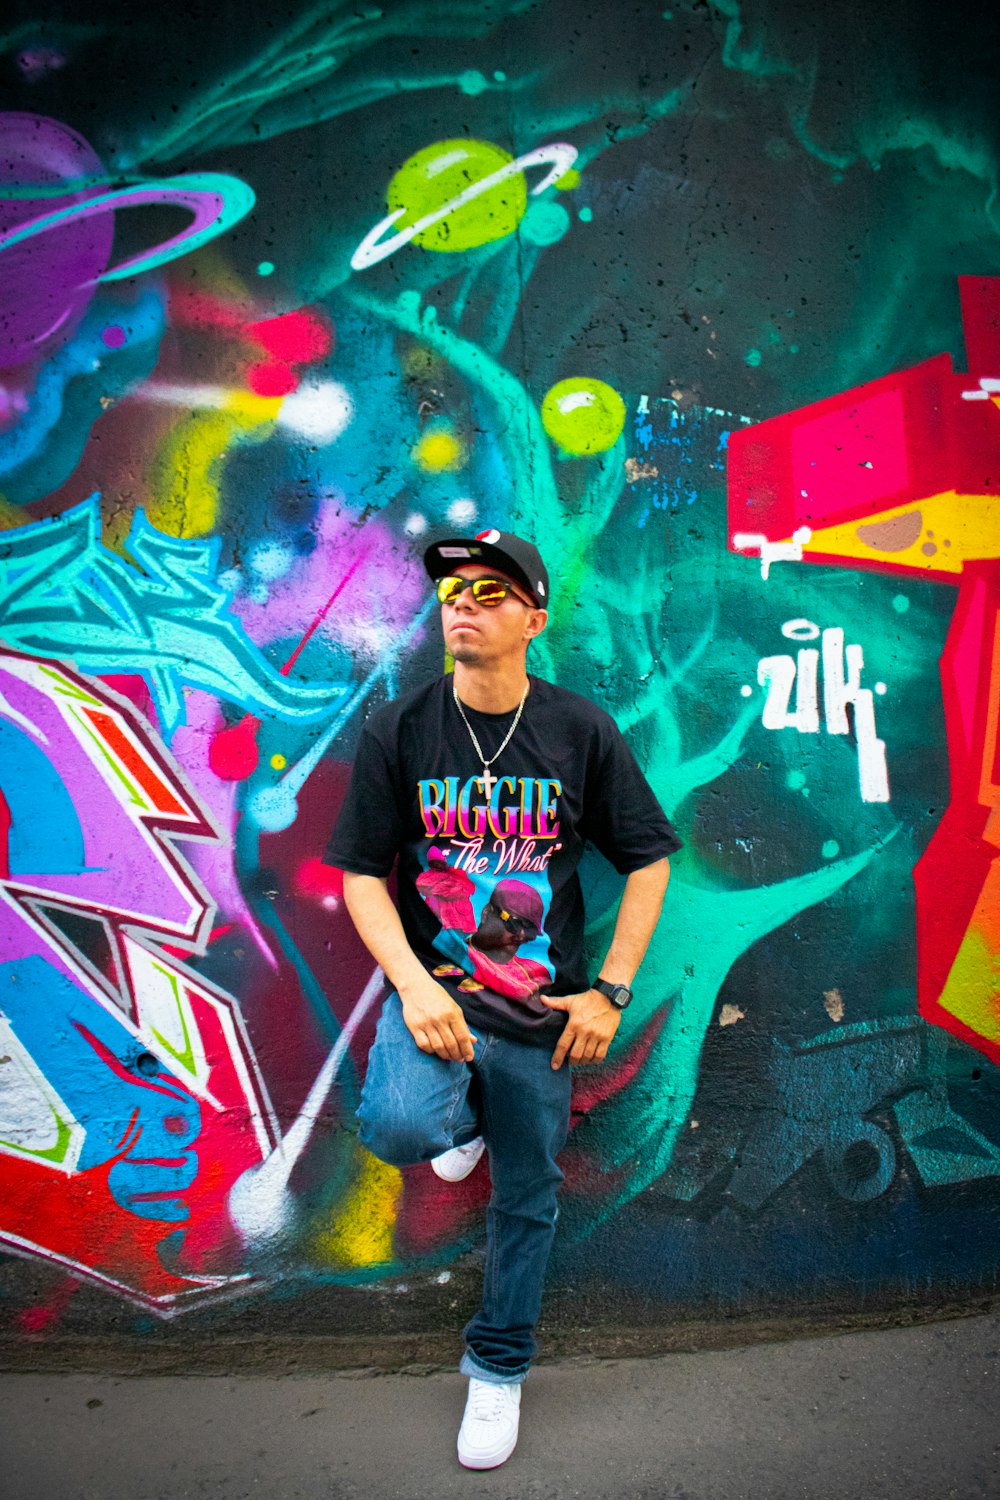 man leaning on graffiti wall